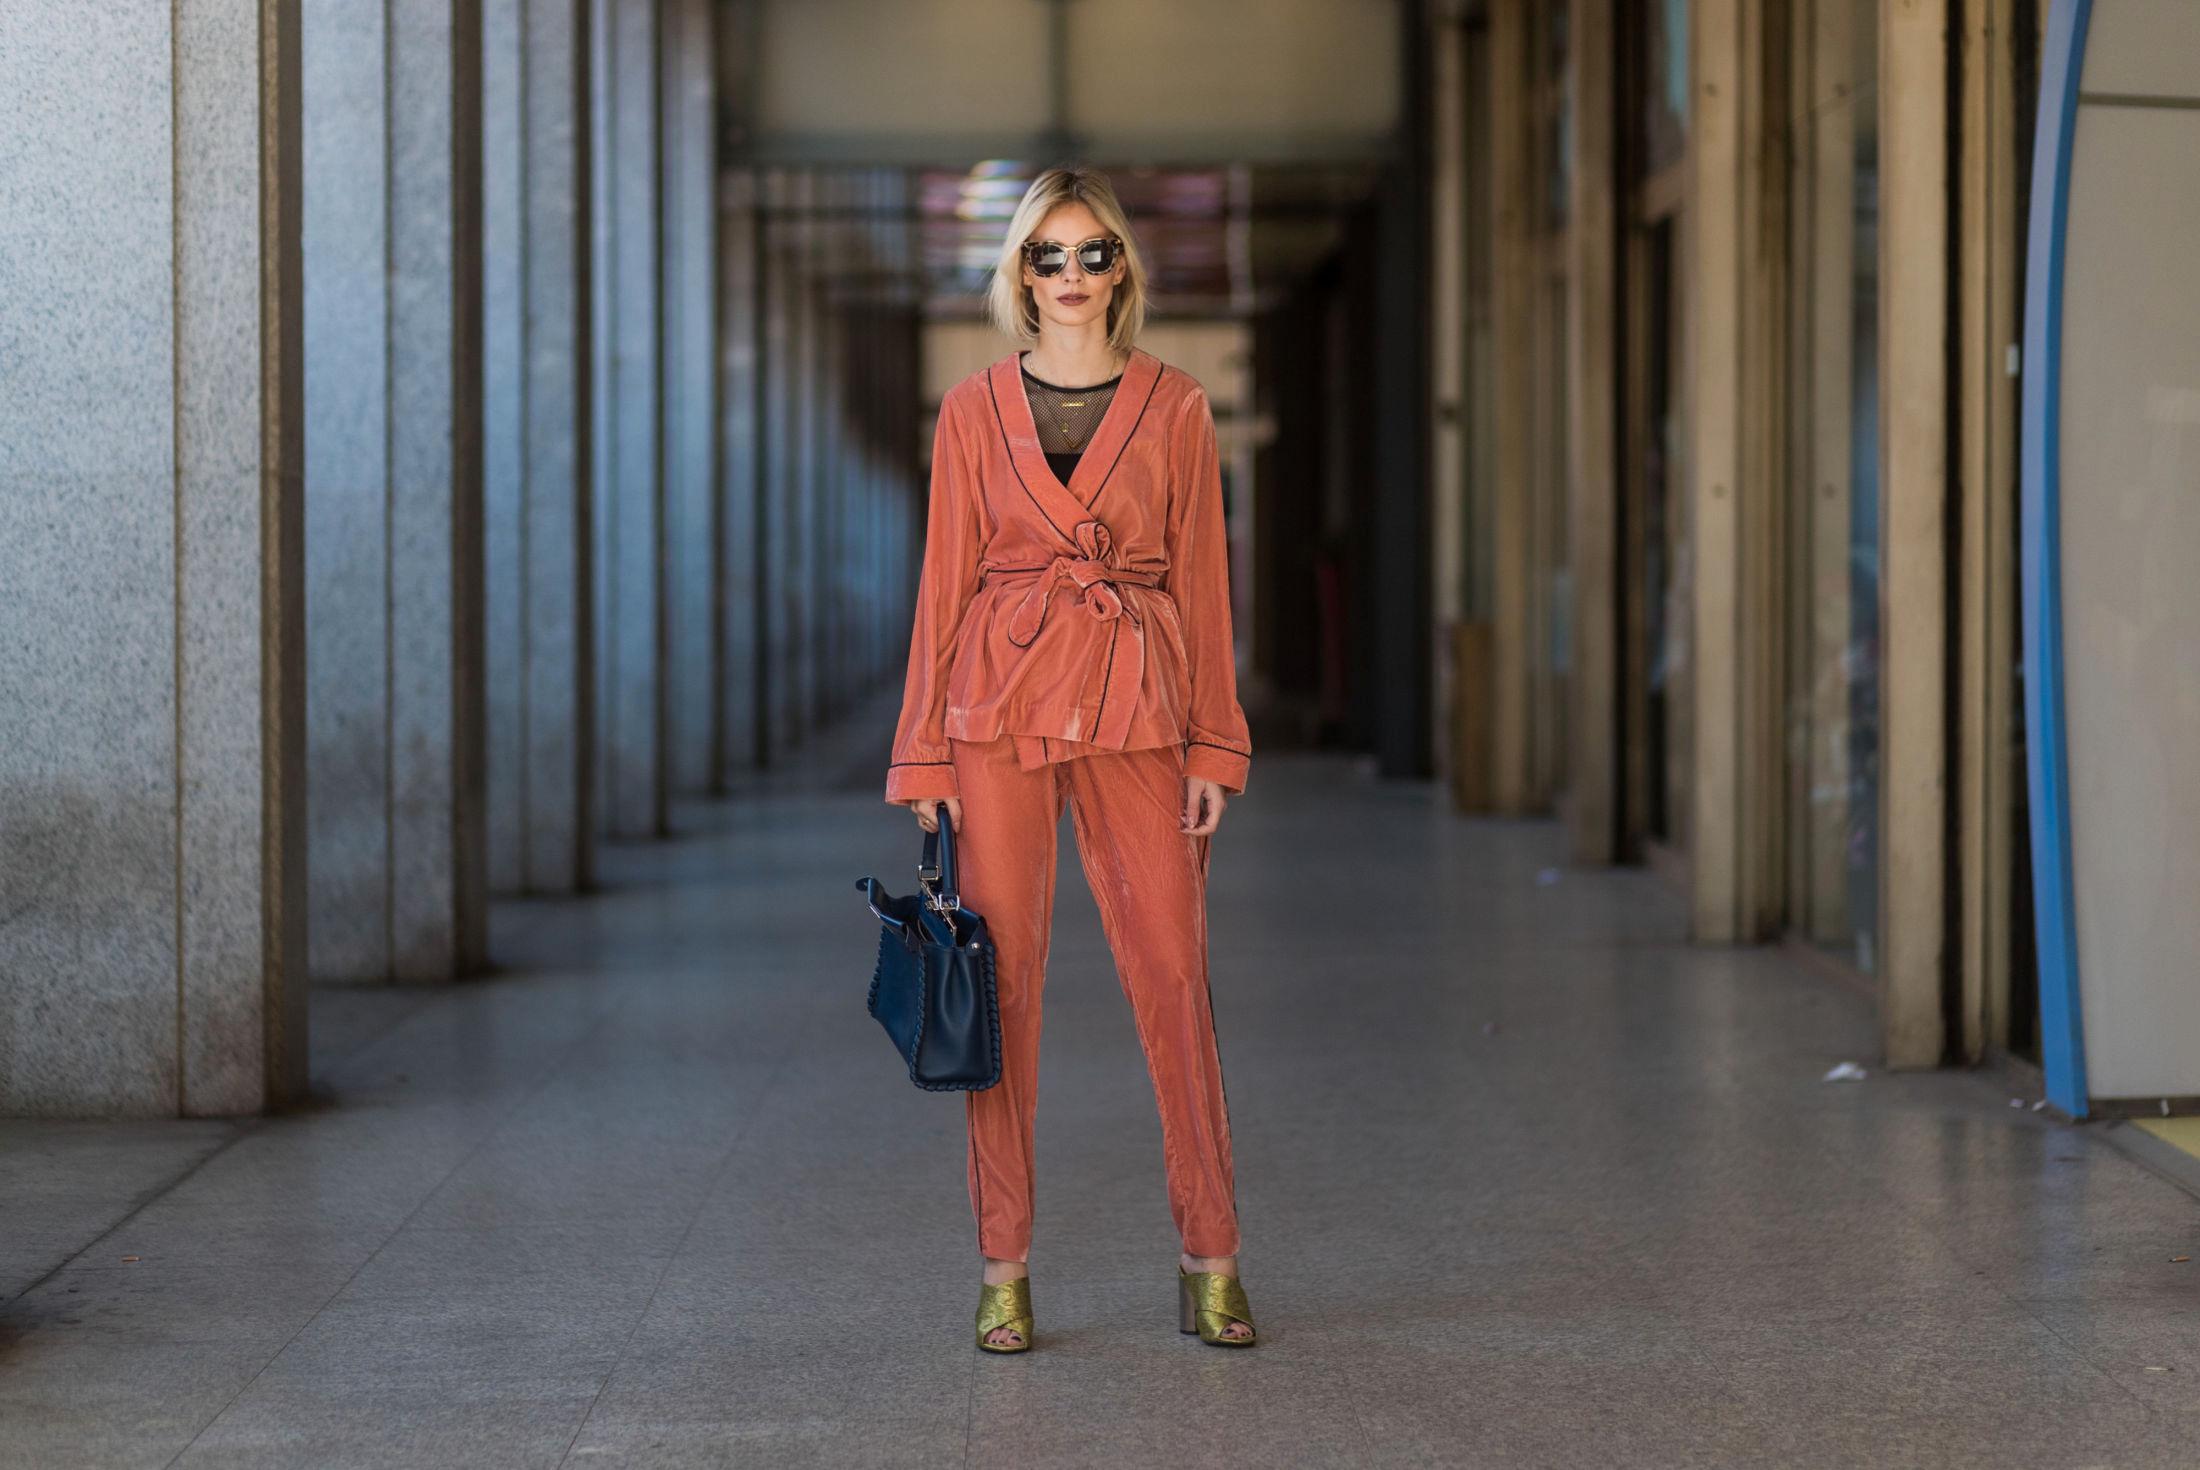 KIMONO-VERSJON: Blogger Lisa Hahnbueck ser fasjonabel ut i en pysjamas-dress fra Designers Remix. Hun har stylet den med kontrastfarger som grønne slip-in sandaler, mørkeblå shopper og en sort synlig bluse. Foto: Getty Images.